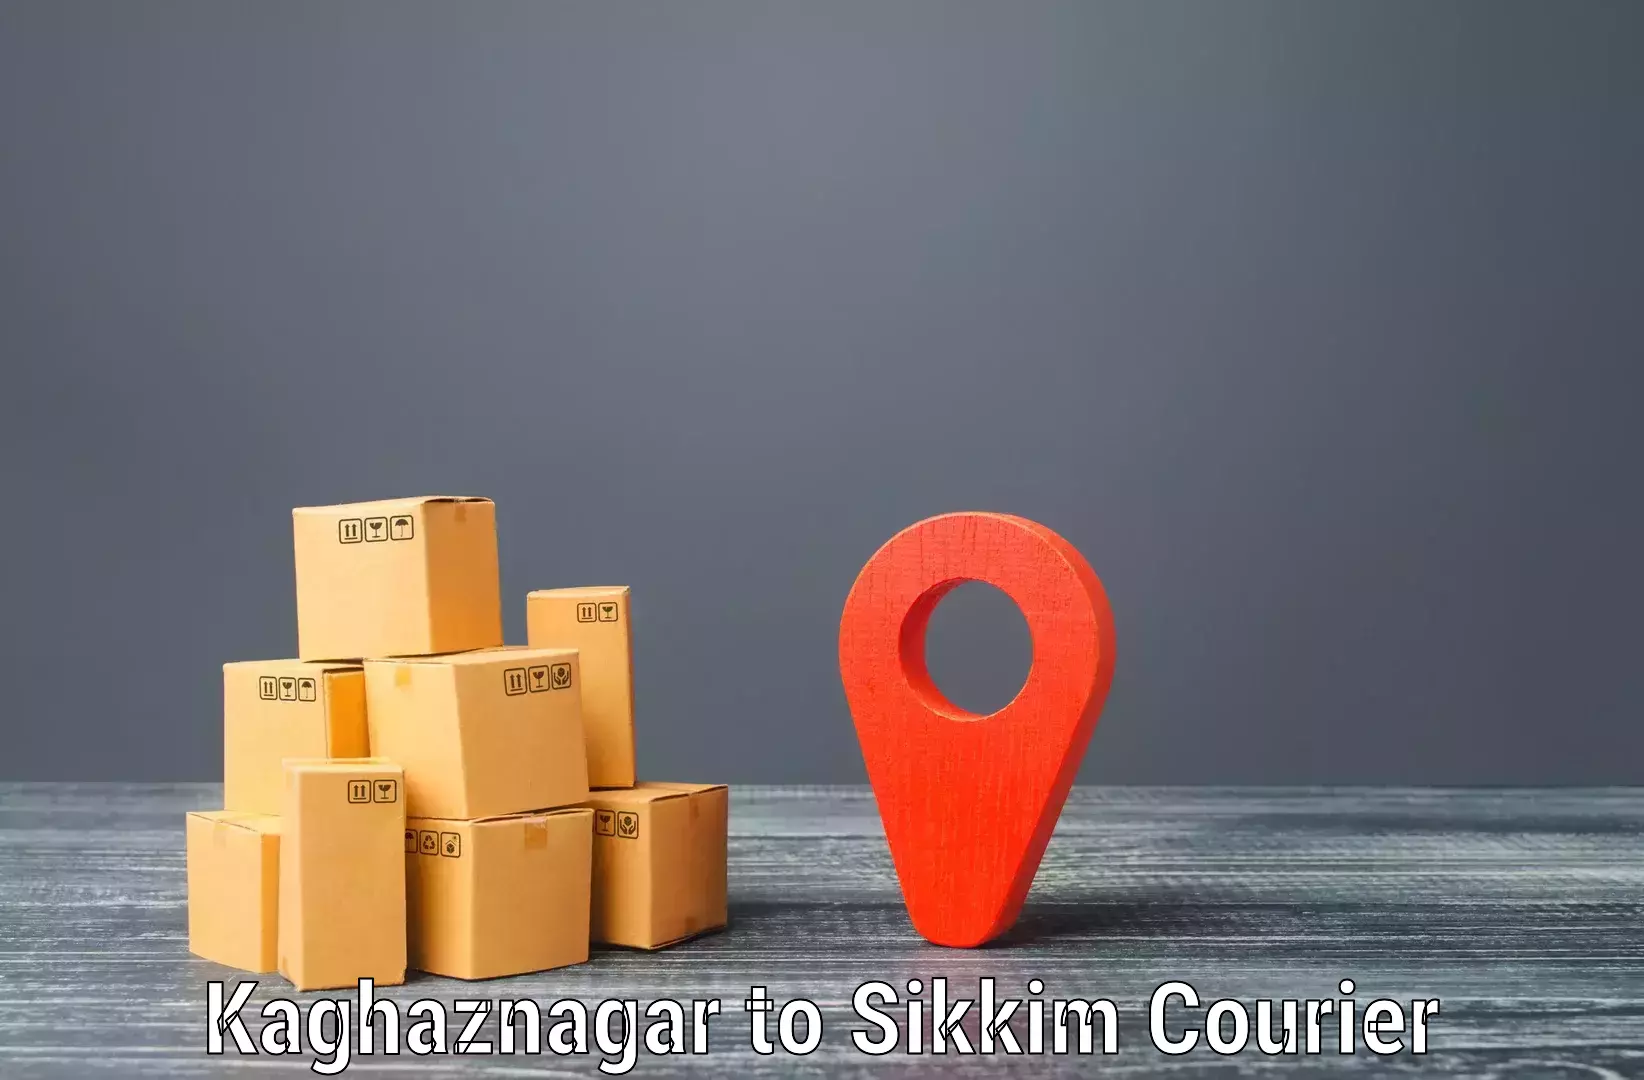 Courier app Kaghaznagar to Gangtok